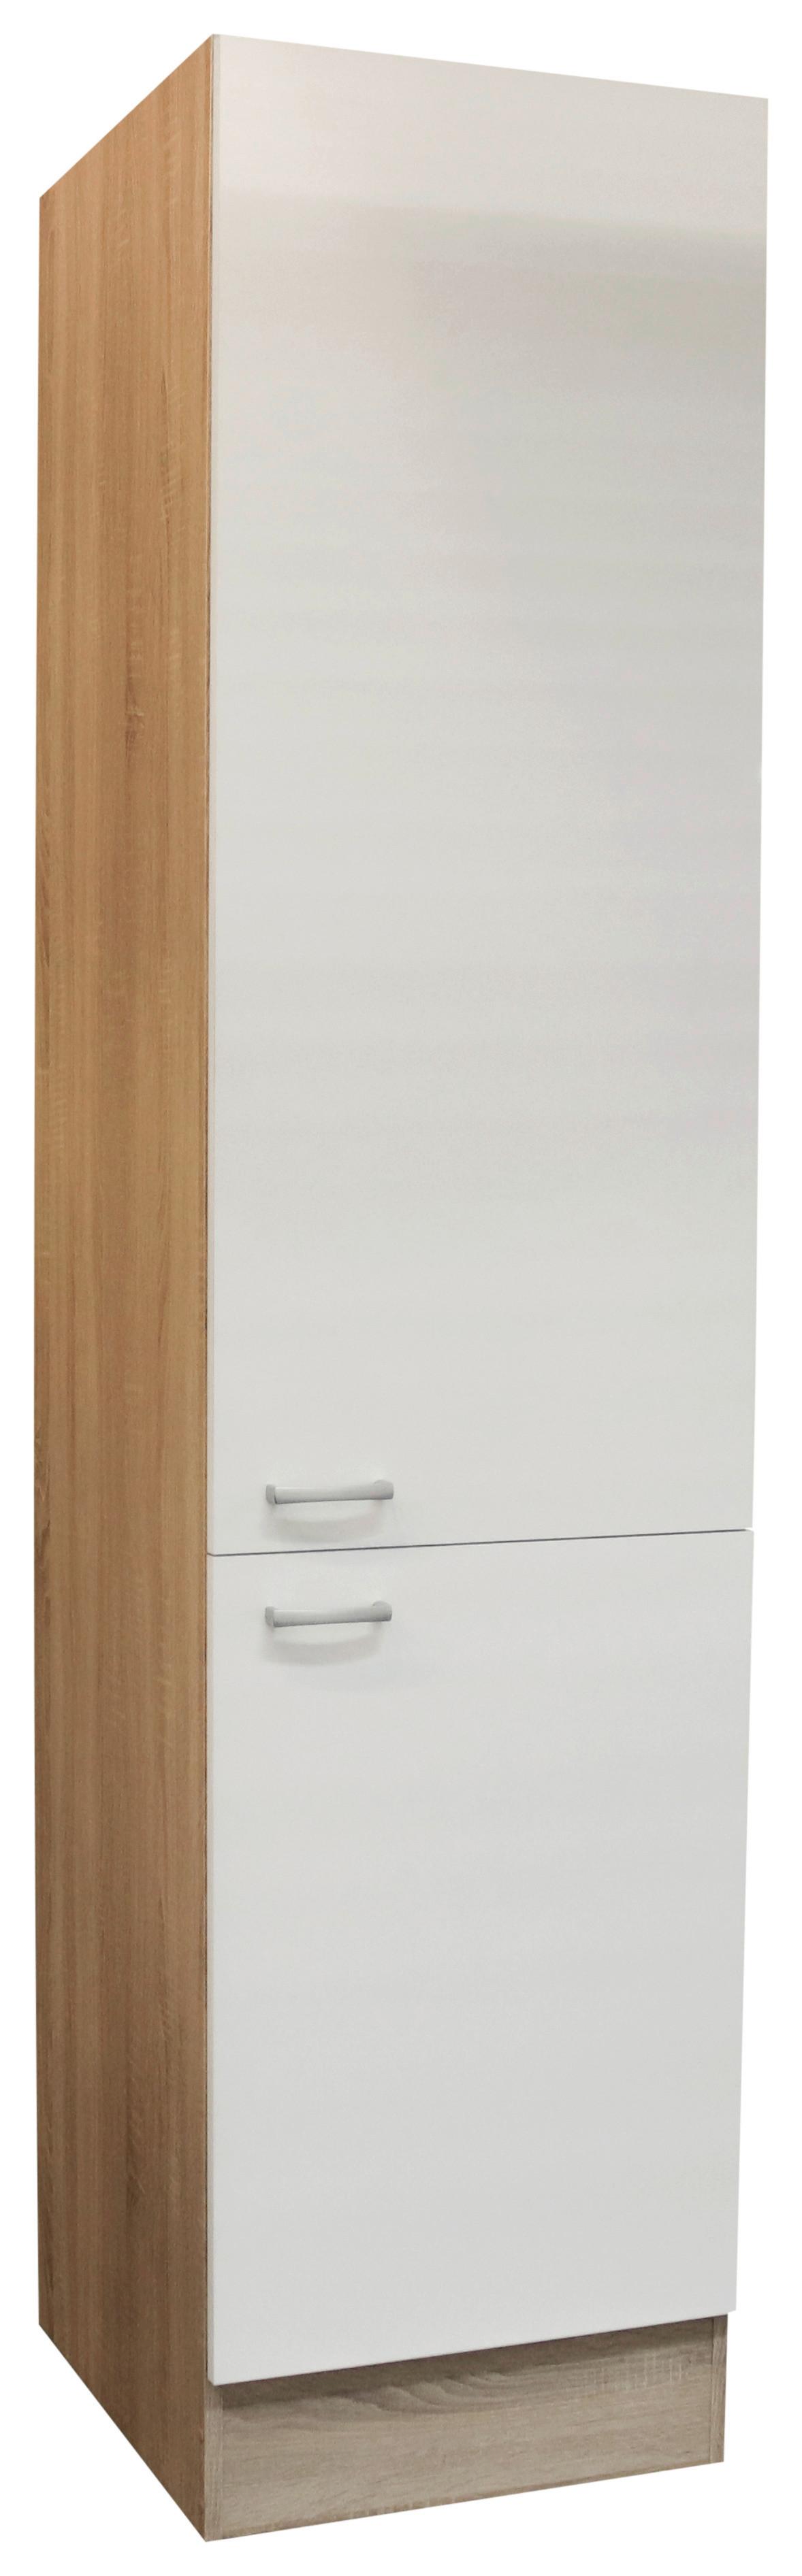 Küchen-Hochschrank Andy B:50cm Weiß 2 Türen 4 Einlegeböden - Eichefarben/Weiß, Basics, Holzwerkstoff (50/211/56cm) - MID.YOU